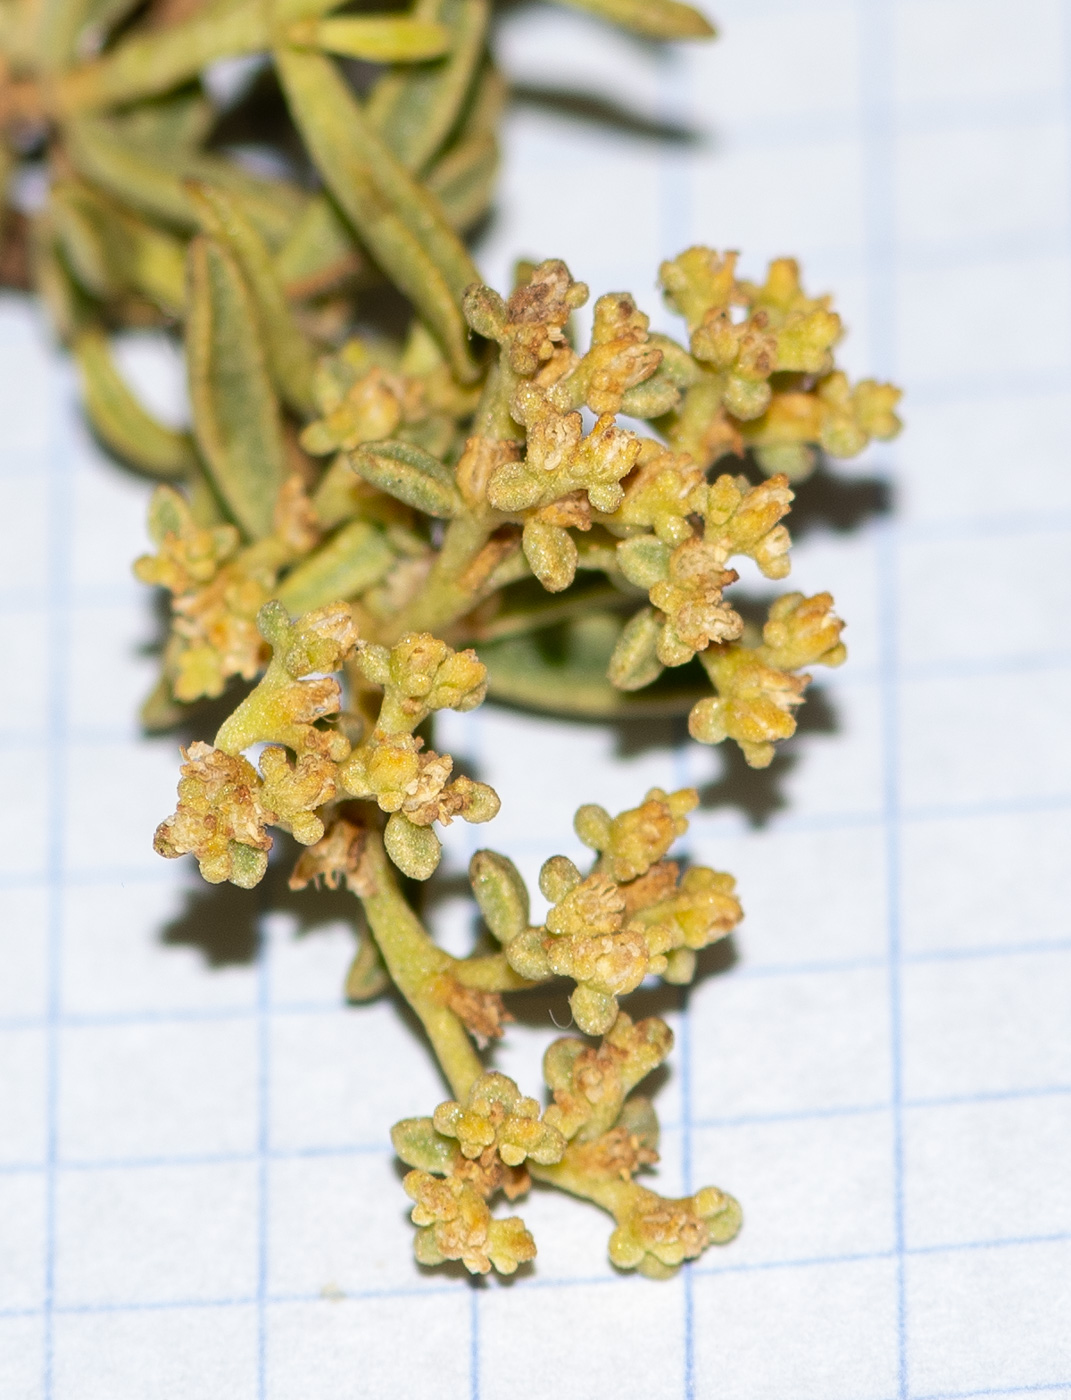 Image of class Magnoliopsida specimen.